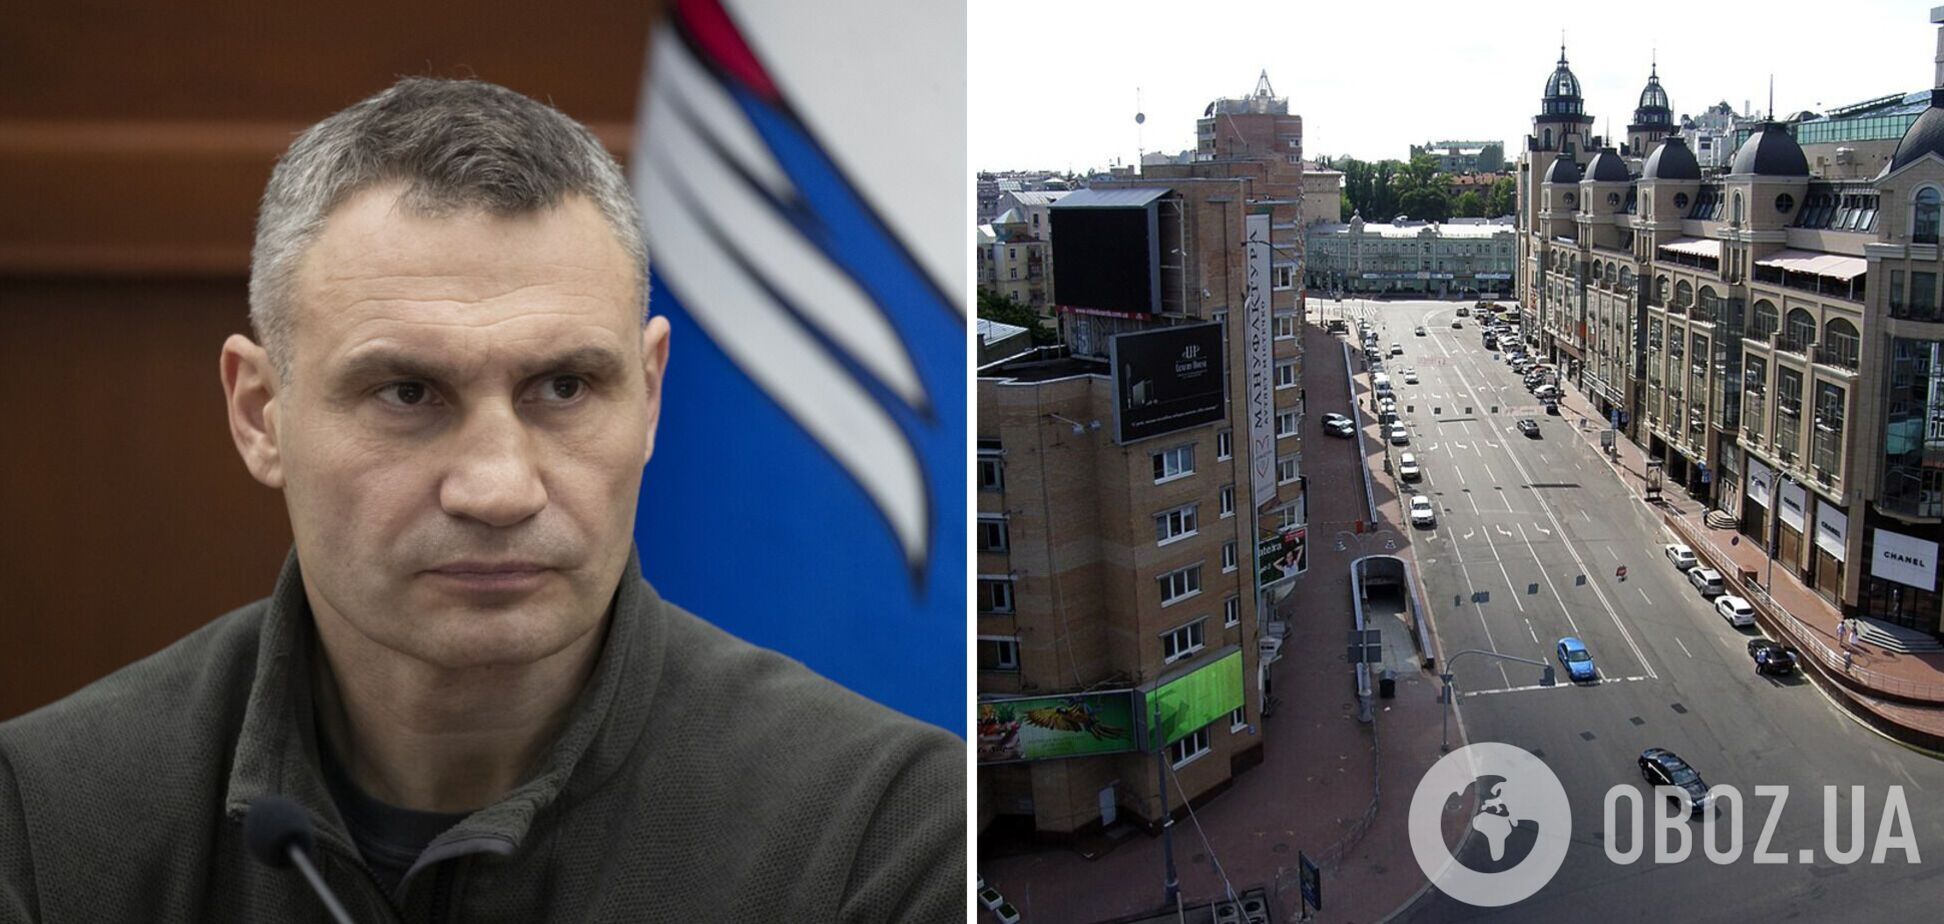 Кличко выступил против переименования улицы Скоропадского в честь Омельченко – мэр Киева подписал петицию